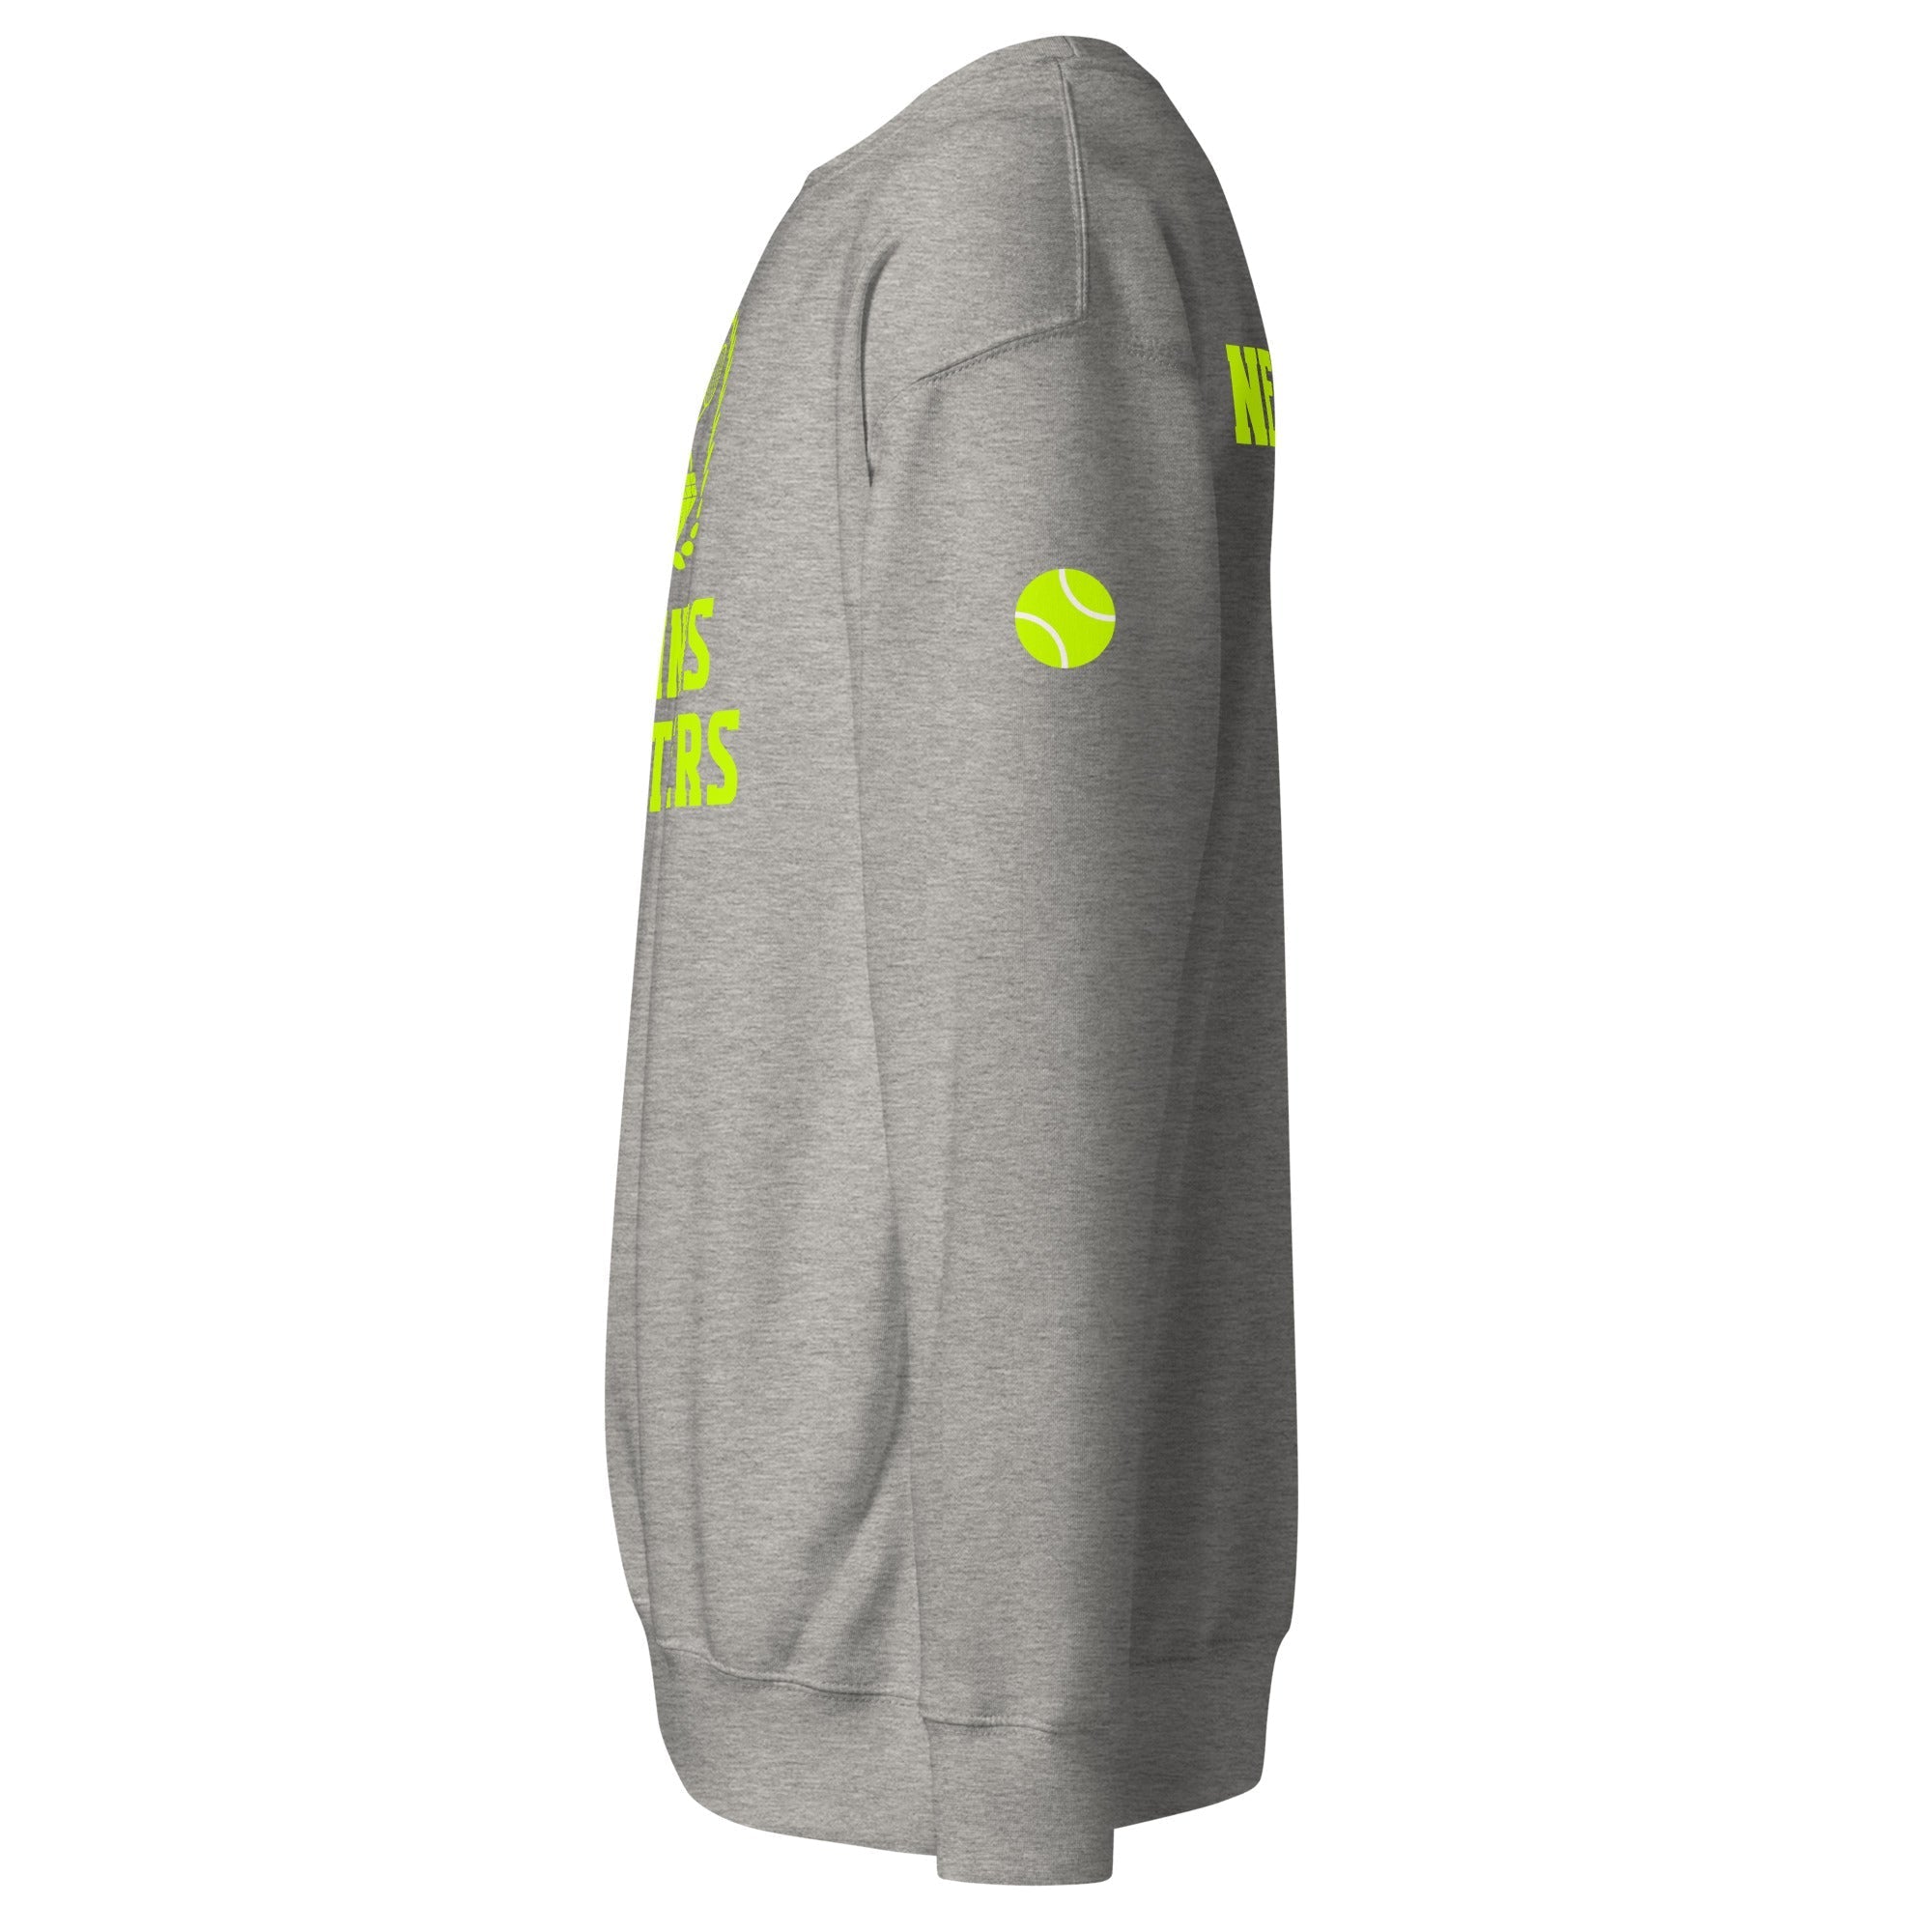 Unisex Premium Sweatshirt - Tennis Masters Newport - GRAPHIC T-SHIRTS